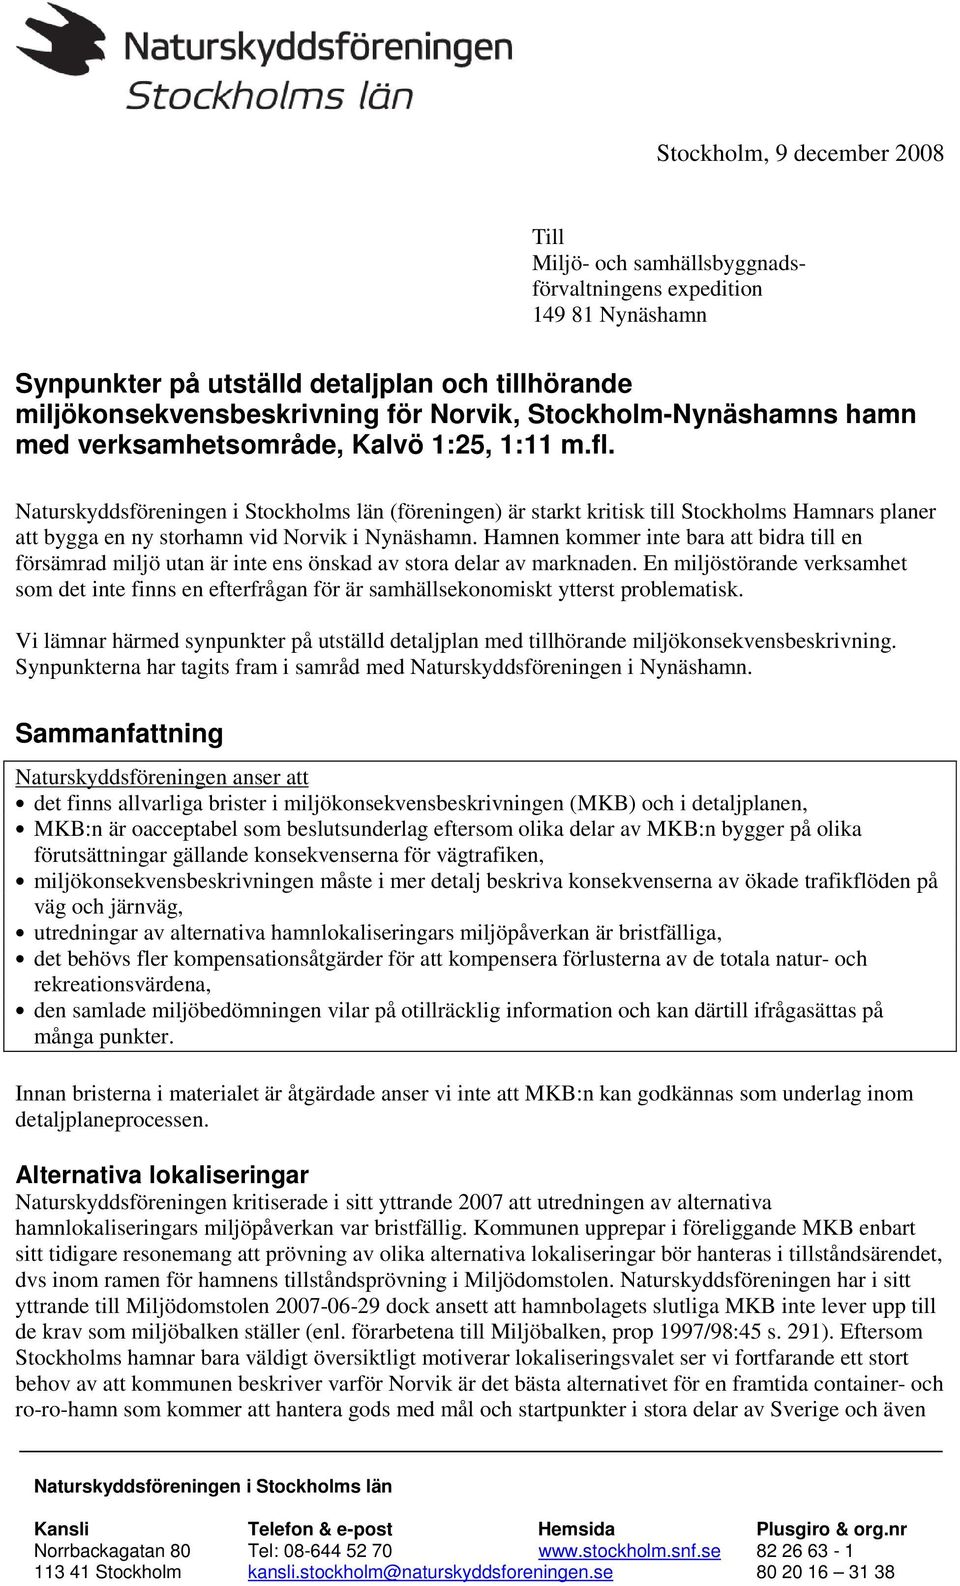 Naturskyddsföreningen i Stockholms län (föreningen) är starkt kritisk till Stockholms Hamnars planer att bygga en ny storhamn vid Norvik i Nynäshamn.